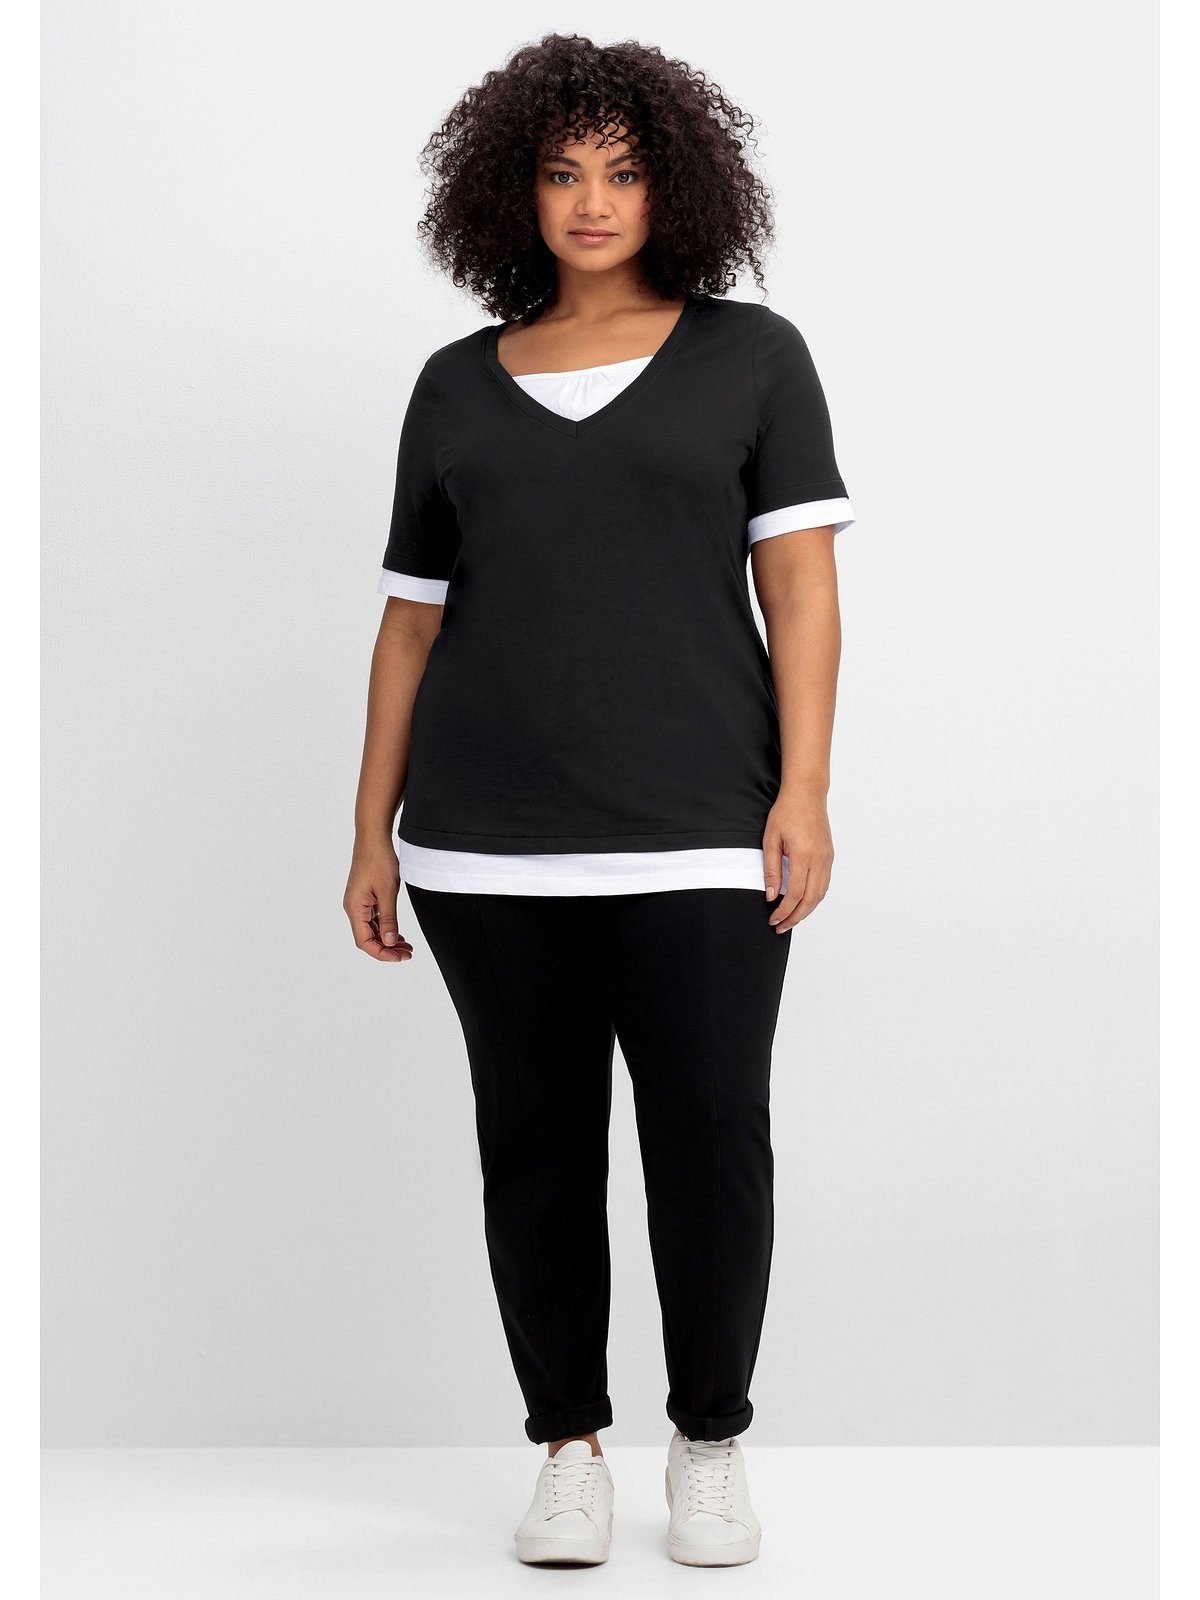 Große mit 2-in-1-Shirt schwarz-weiß Sheego 2-in-1-Optik, Größen in V-Ausschnitt